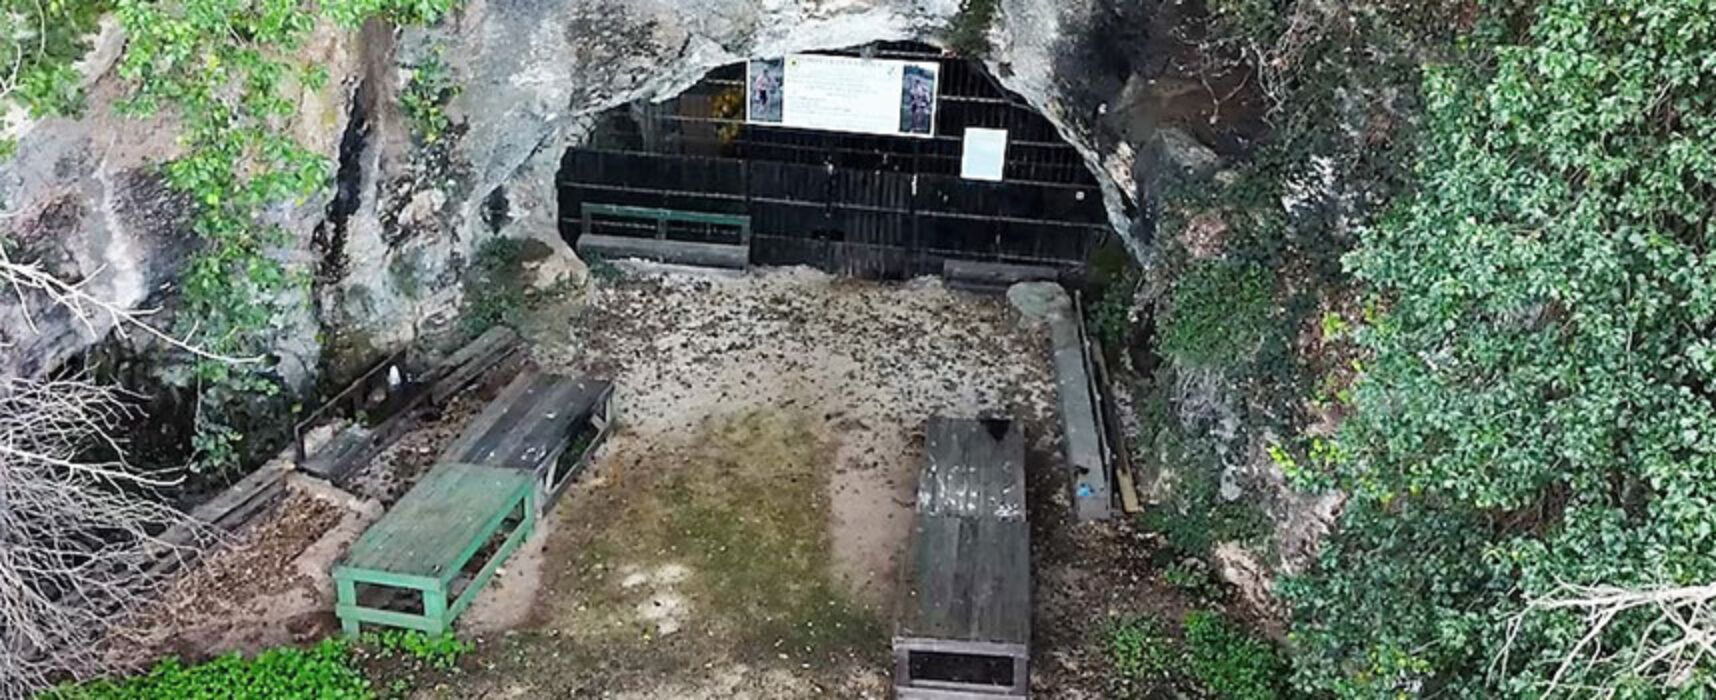 Grotte di Santa Croce, Silvestris: “Riporteremo a Bisceglie il femore di Neanderthal” / VIDEO